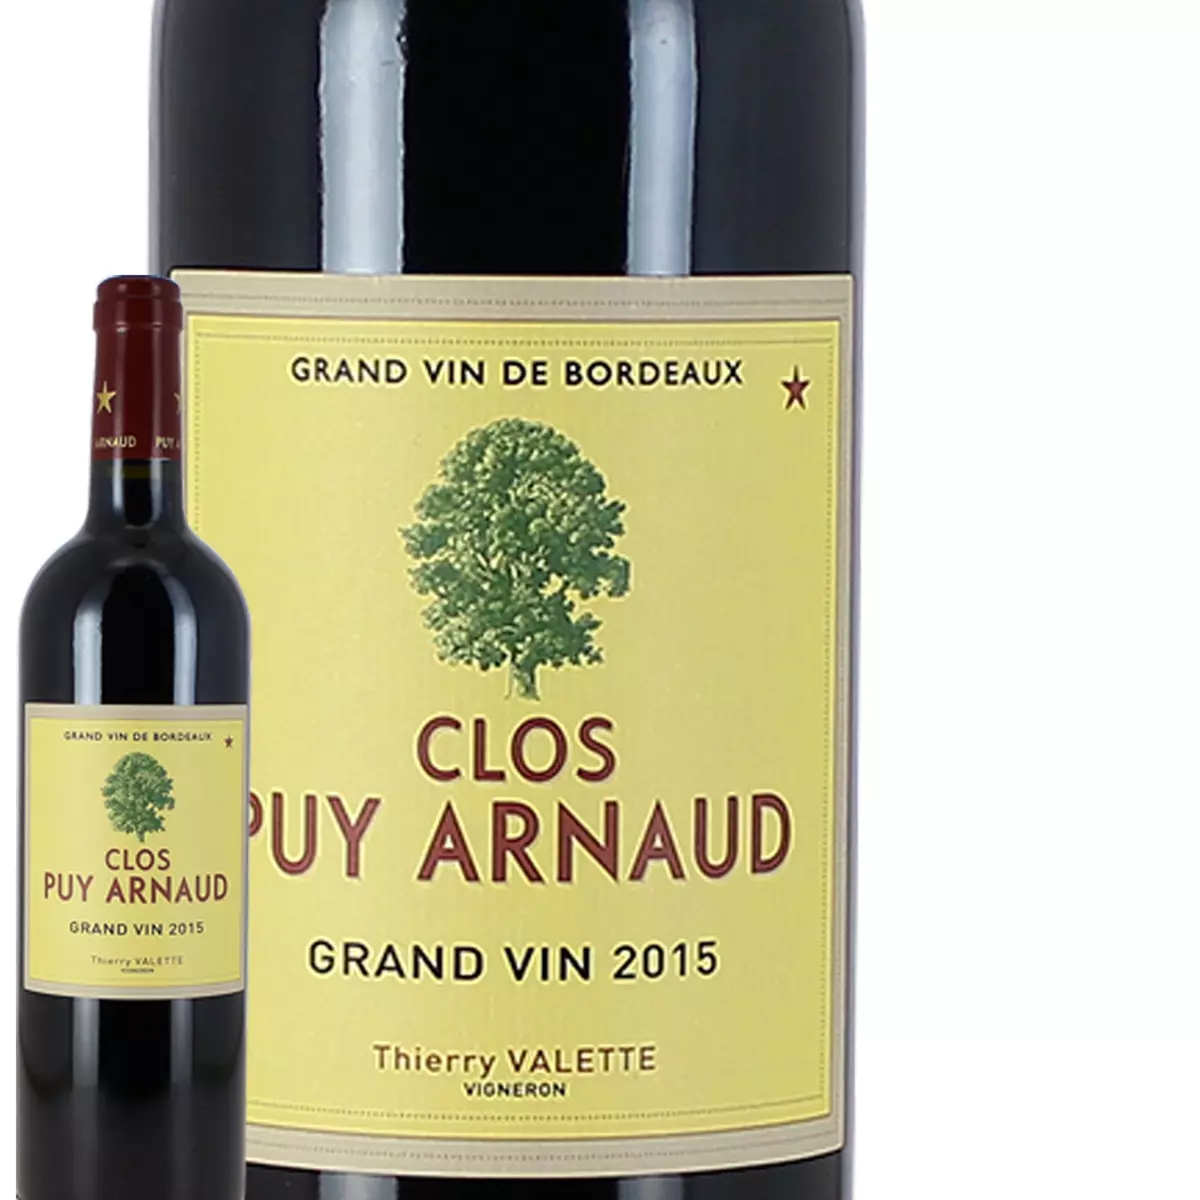 Chateaux Clos Puy Arnaud Castillon cotes de Bordeaux rouge 2015 75cl